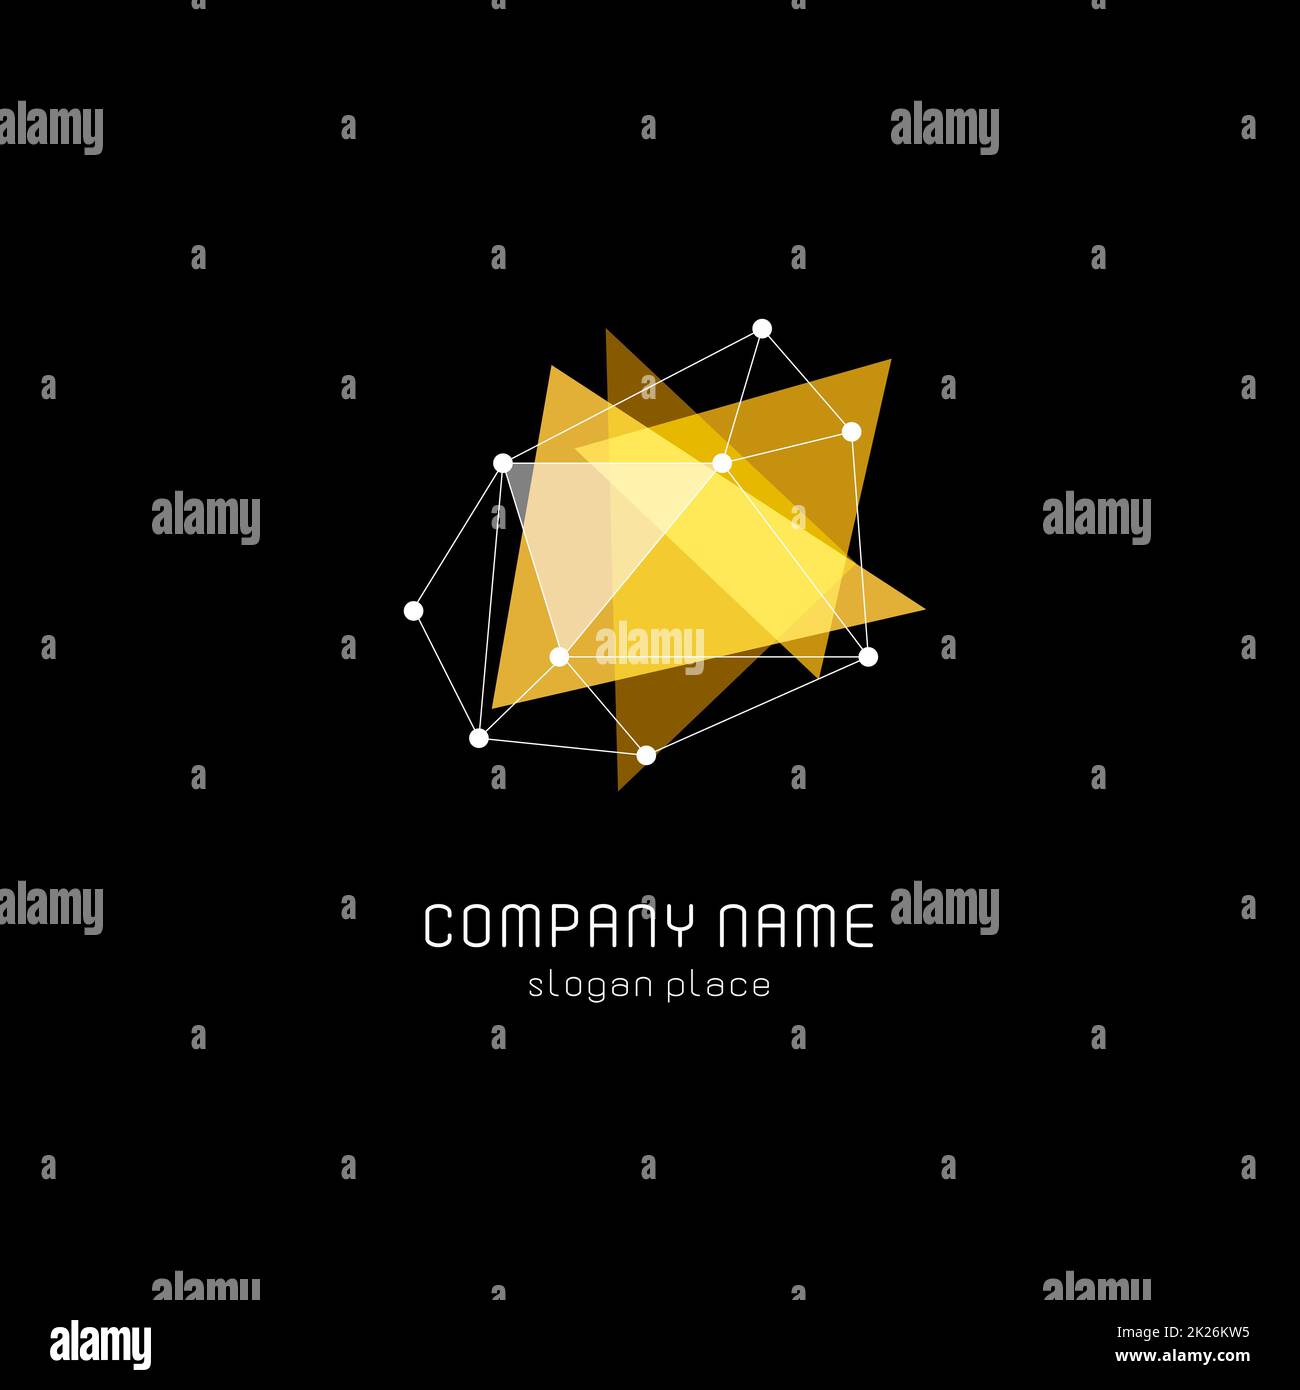 Logotipo vectorial aislado de triángulos abstractos traslúcidos. Logotipo de forma geométrica sobre fondo negro. Ilustración vectorial de polígonos brillantes de color amarillo. Foto de stock